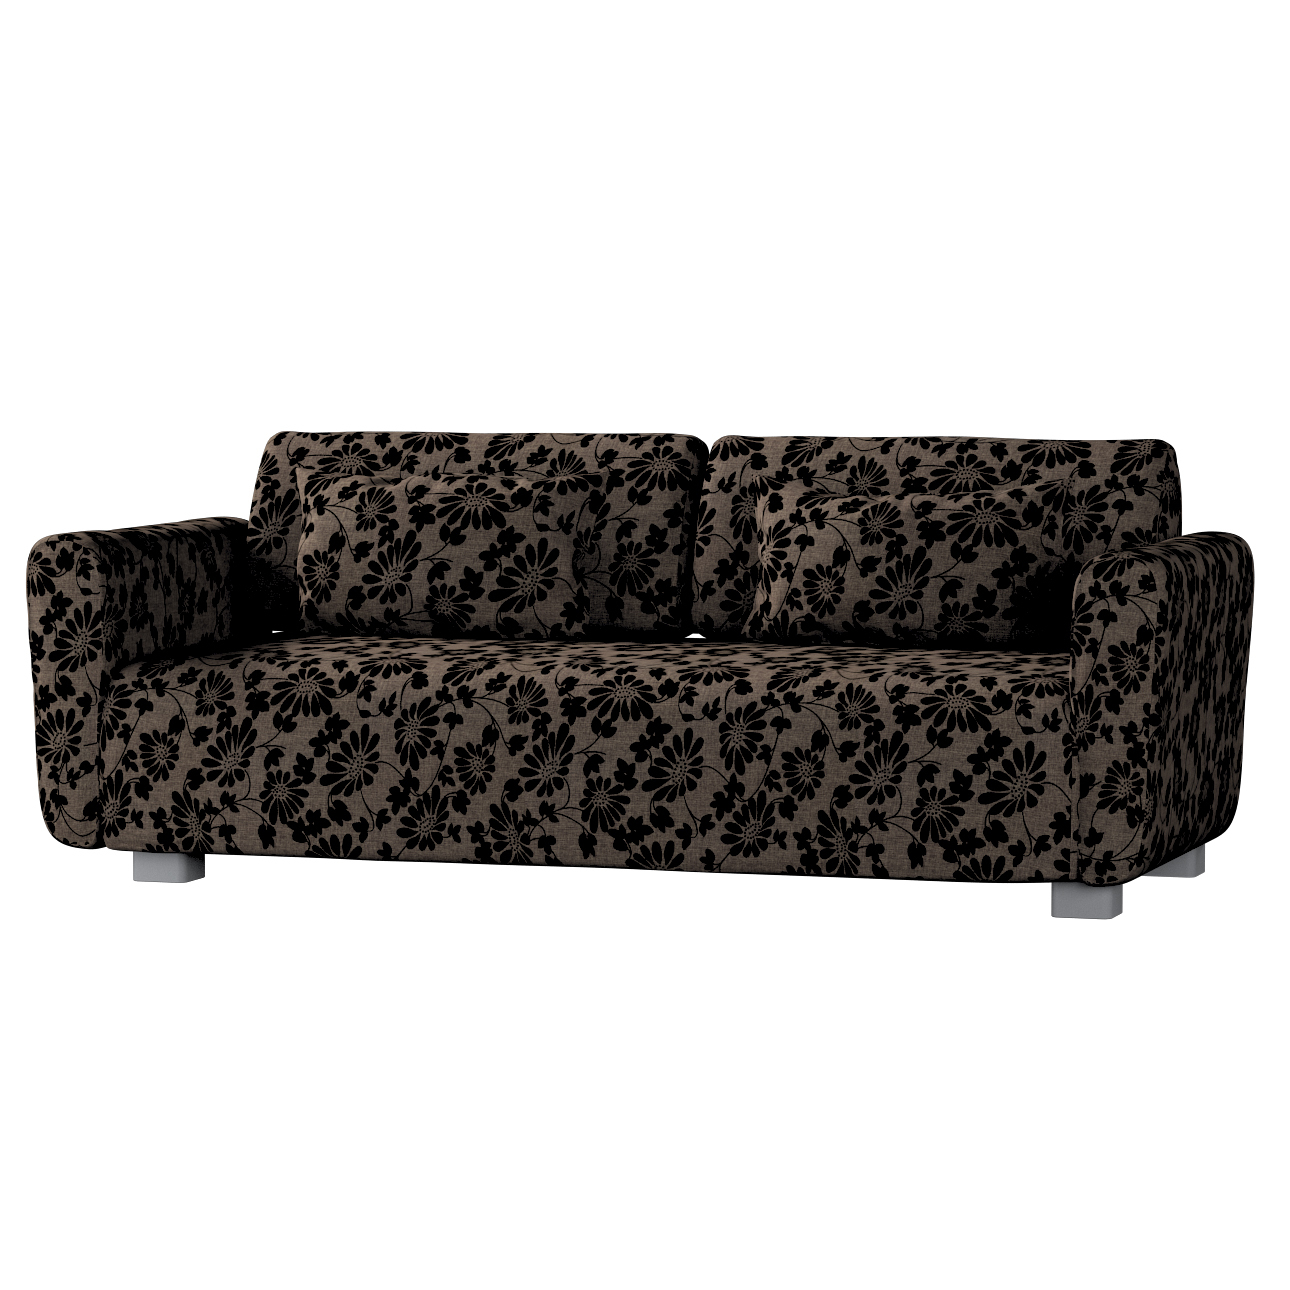 Bezug für Mysinge 2-Sitzer Sofa, braun-schwarz, Sofabezug Mysinge 2-Sitzer, günstig online kaufen